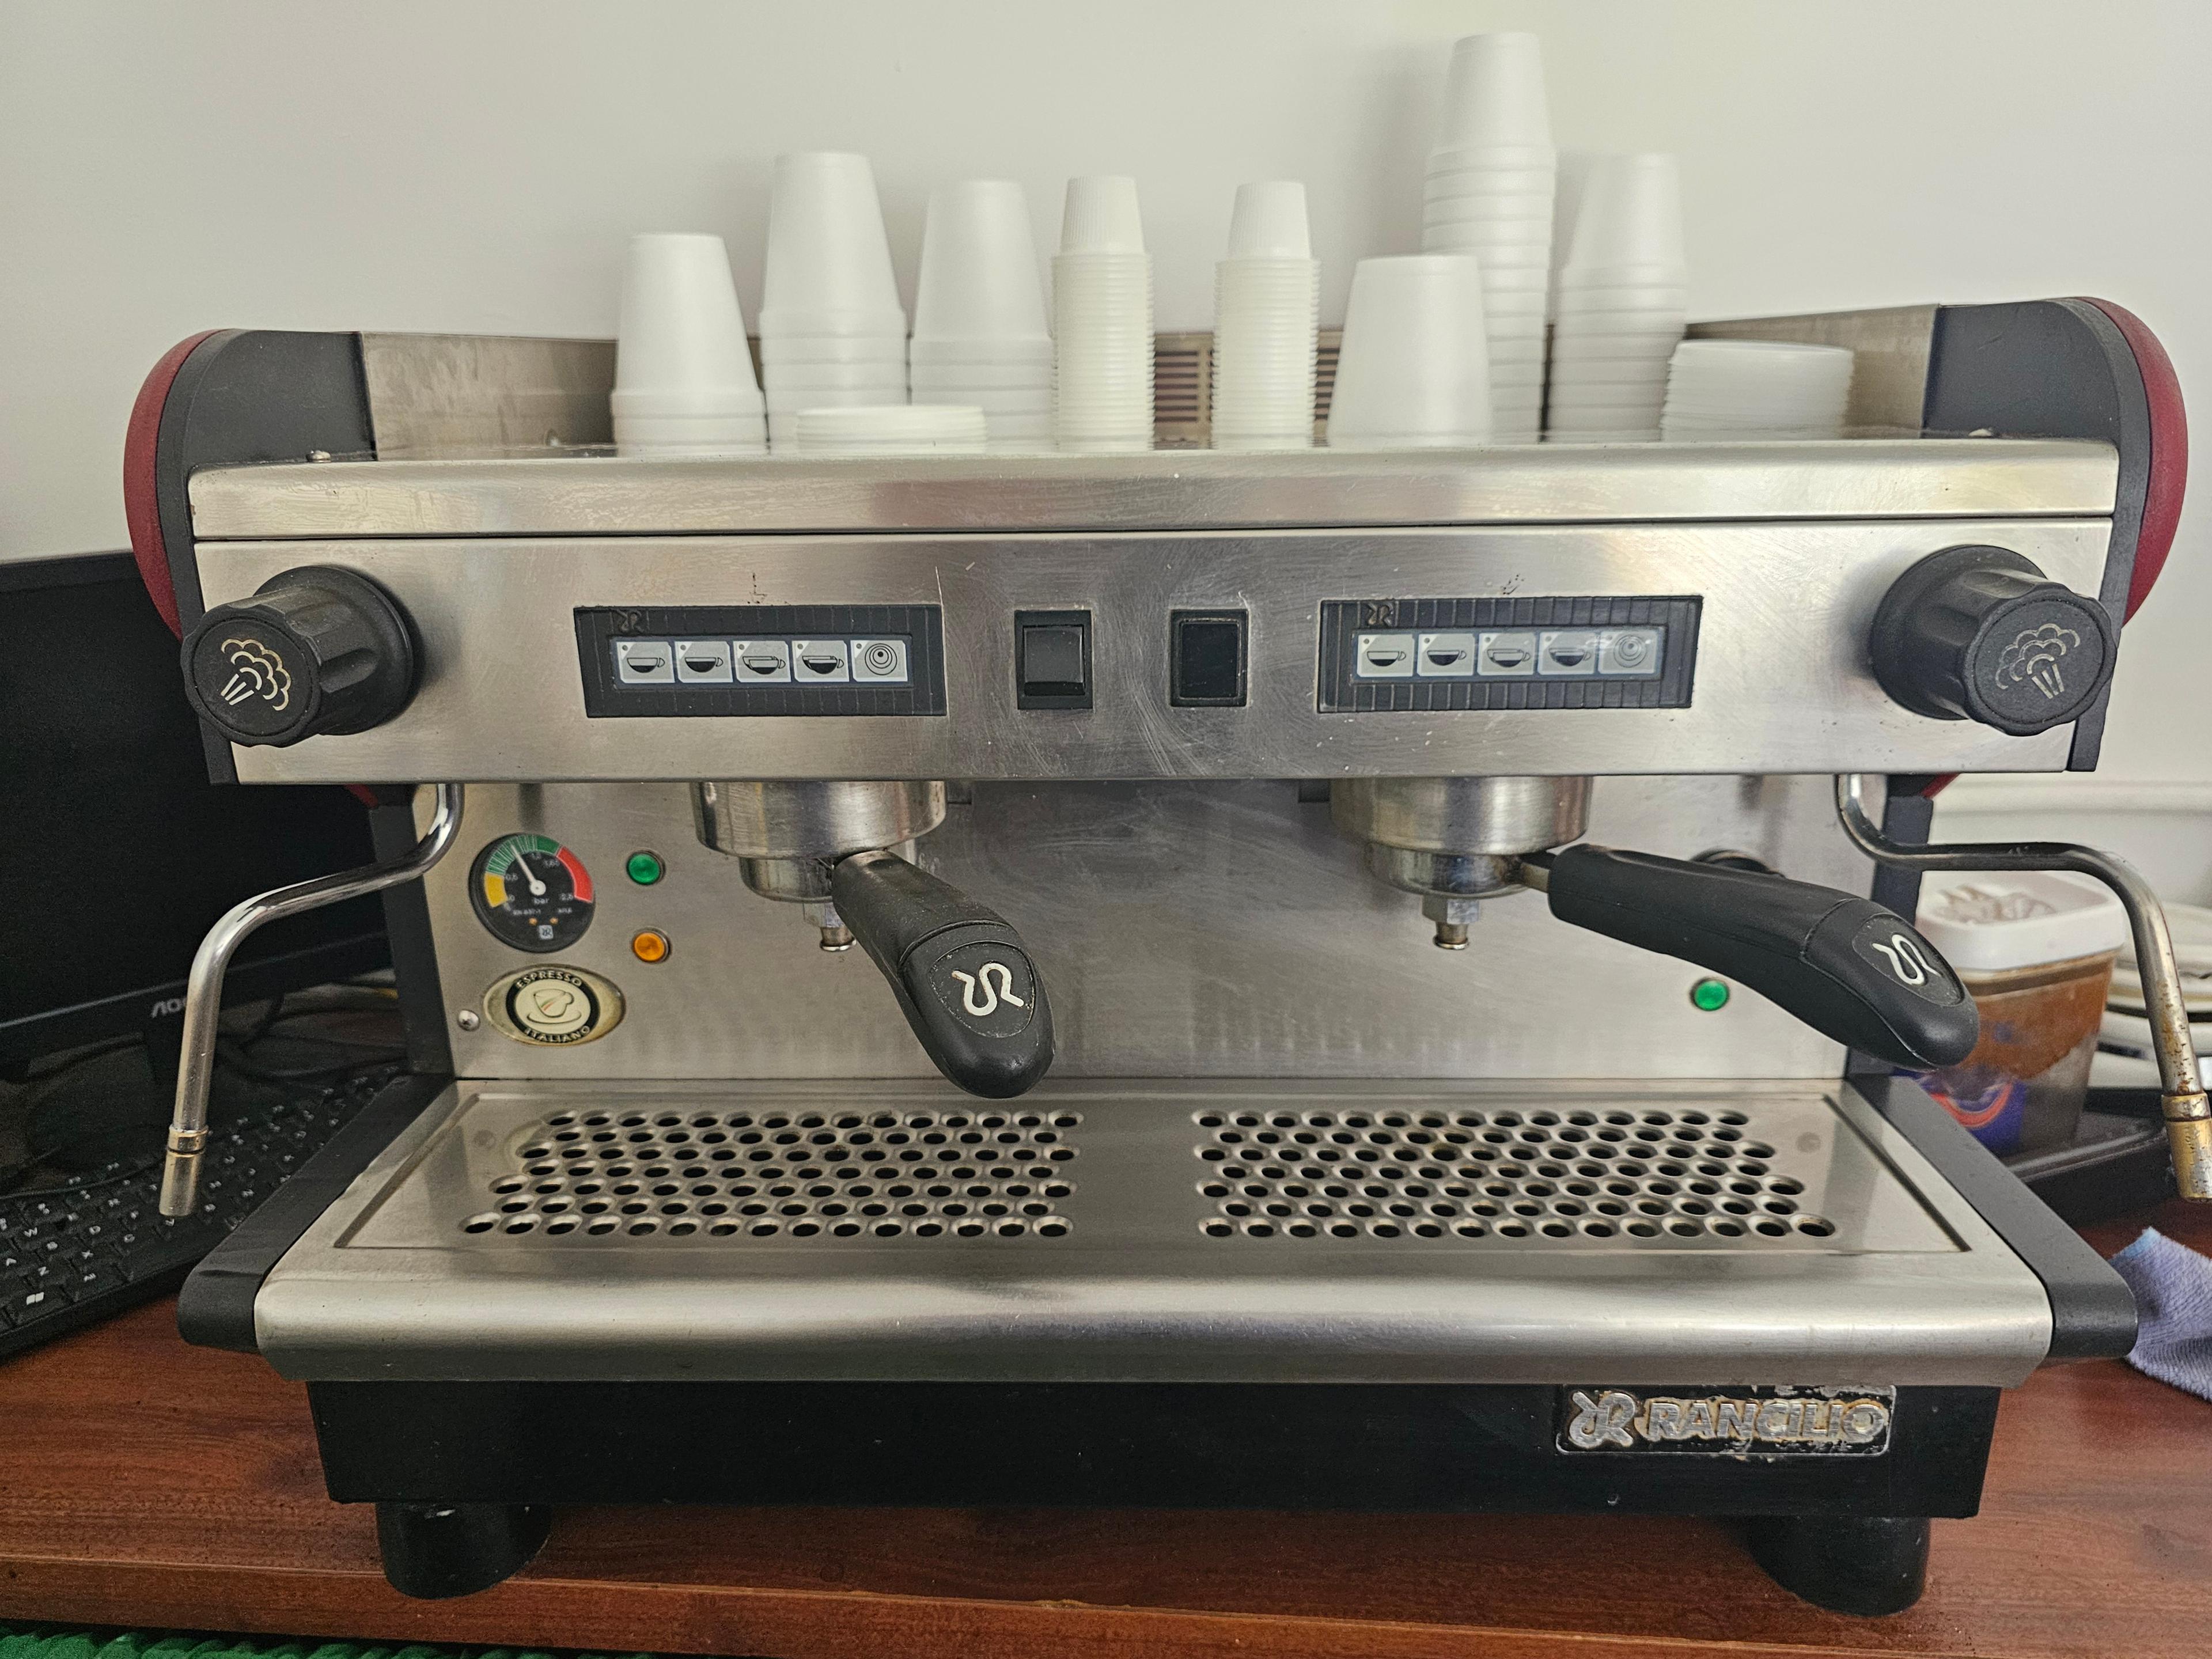 Rancilio Two Group Espresso Machine